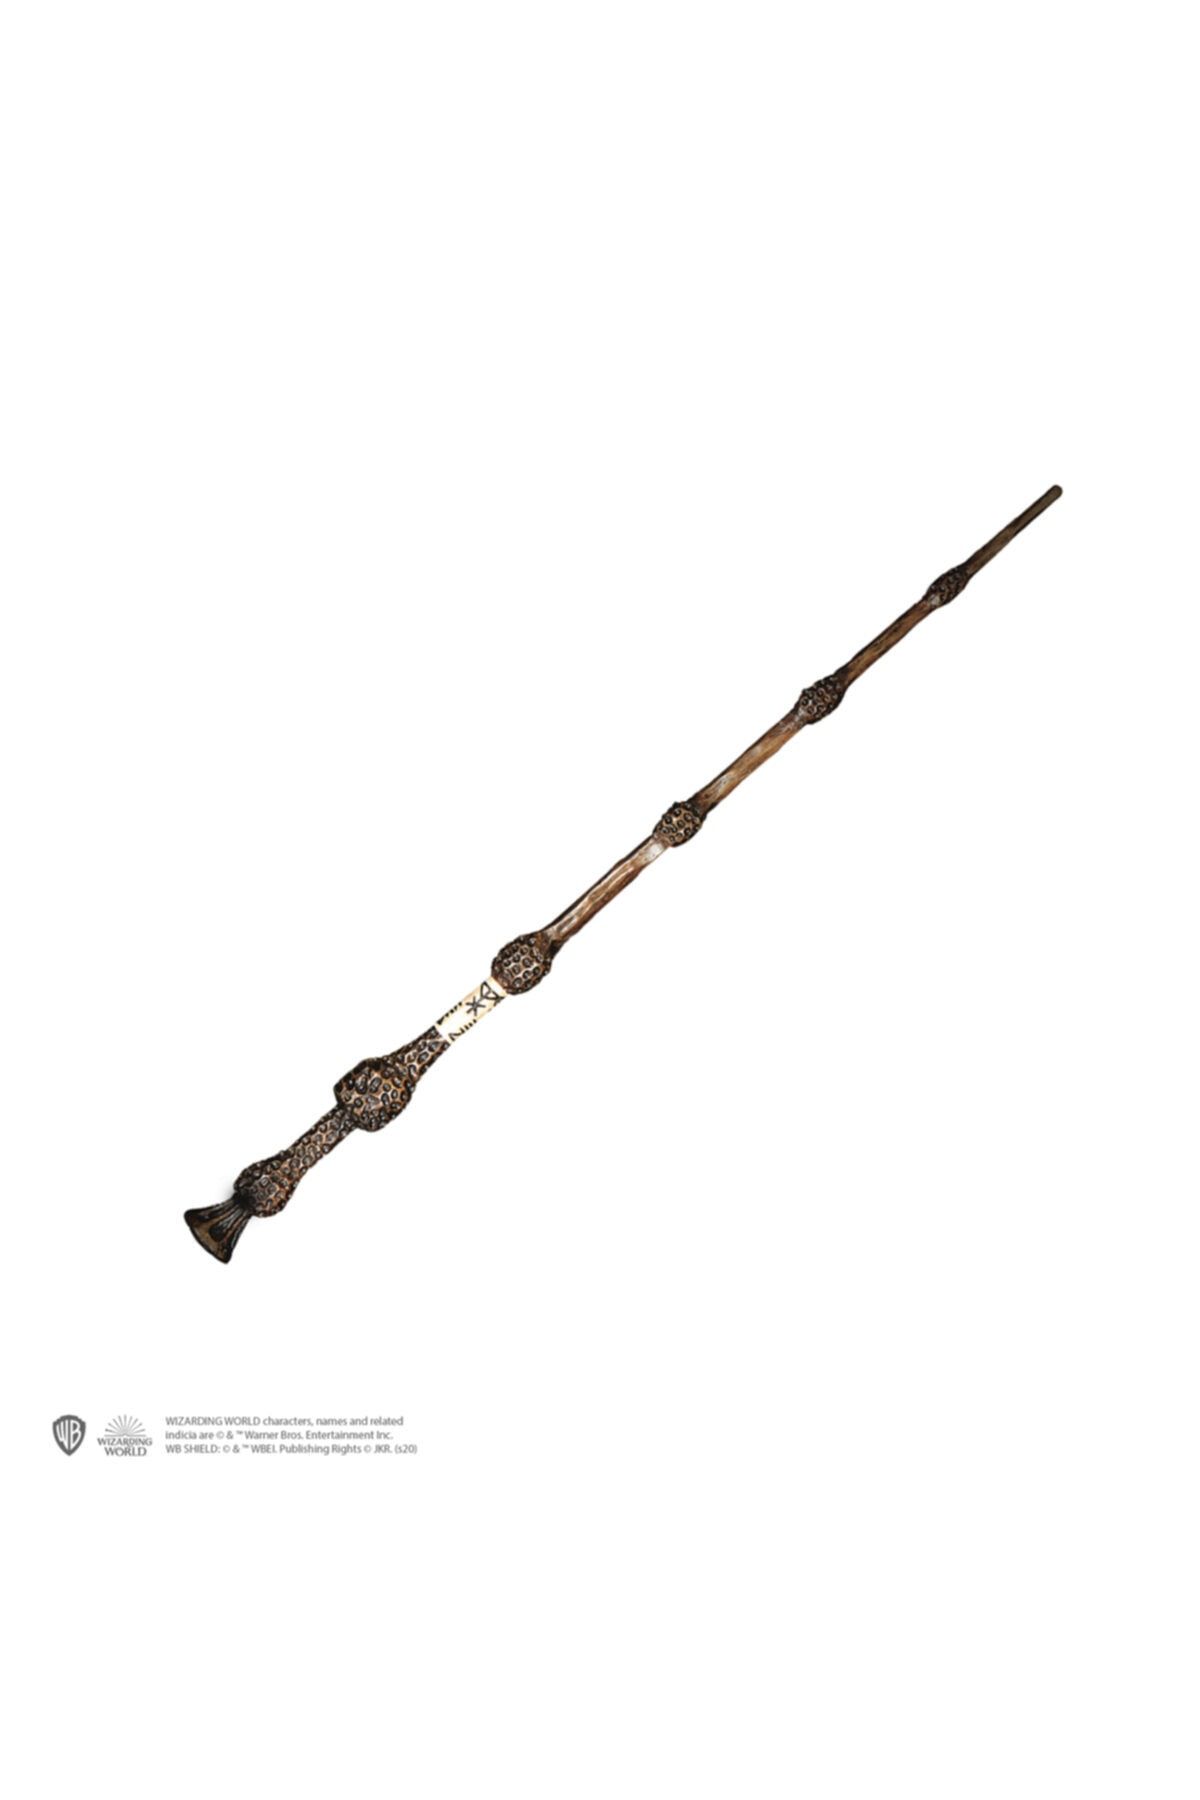 Sihir Dükkanı Ollivander’s Asaları Model : Albus Dumbledore